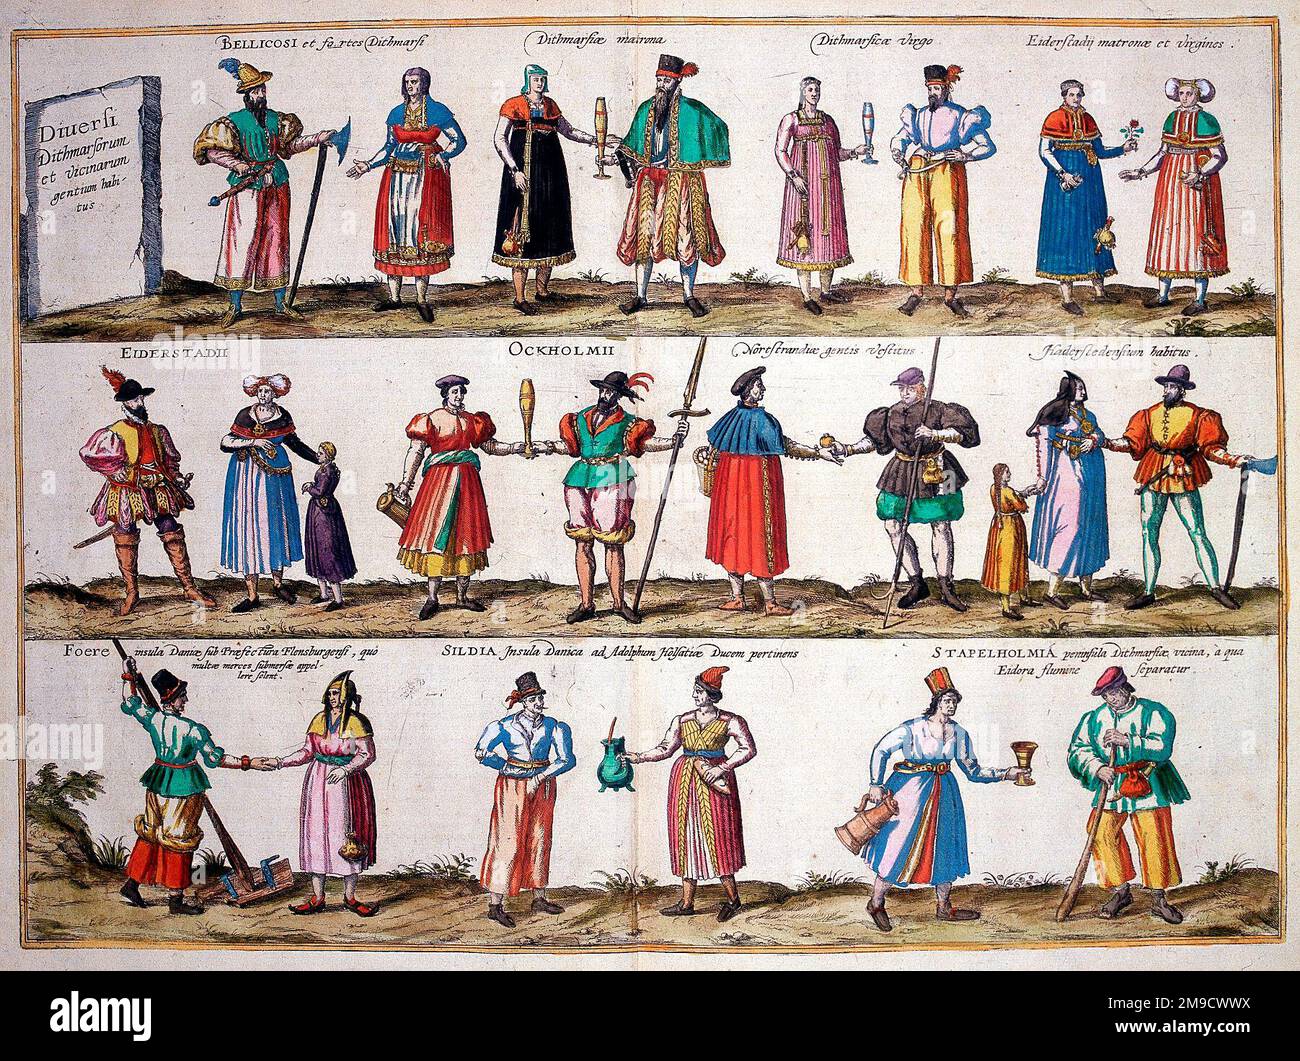 Persone e costumi di Dithmarschen, Germania - Diuersi Dithmarsorum et vicinarum gentium habitus Foto Stock